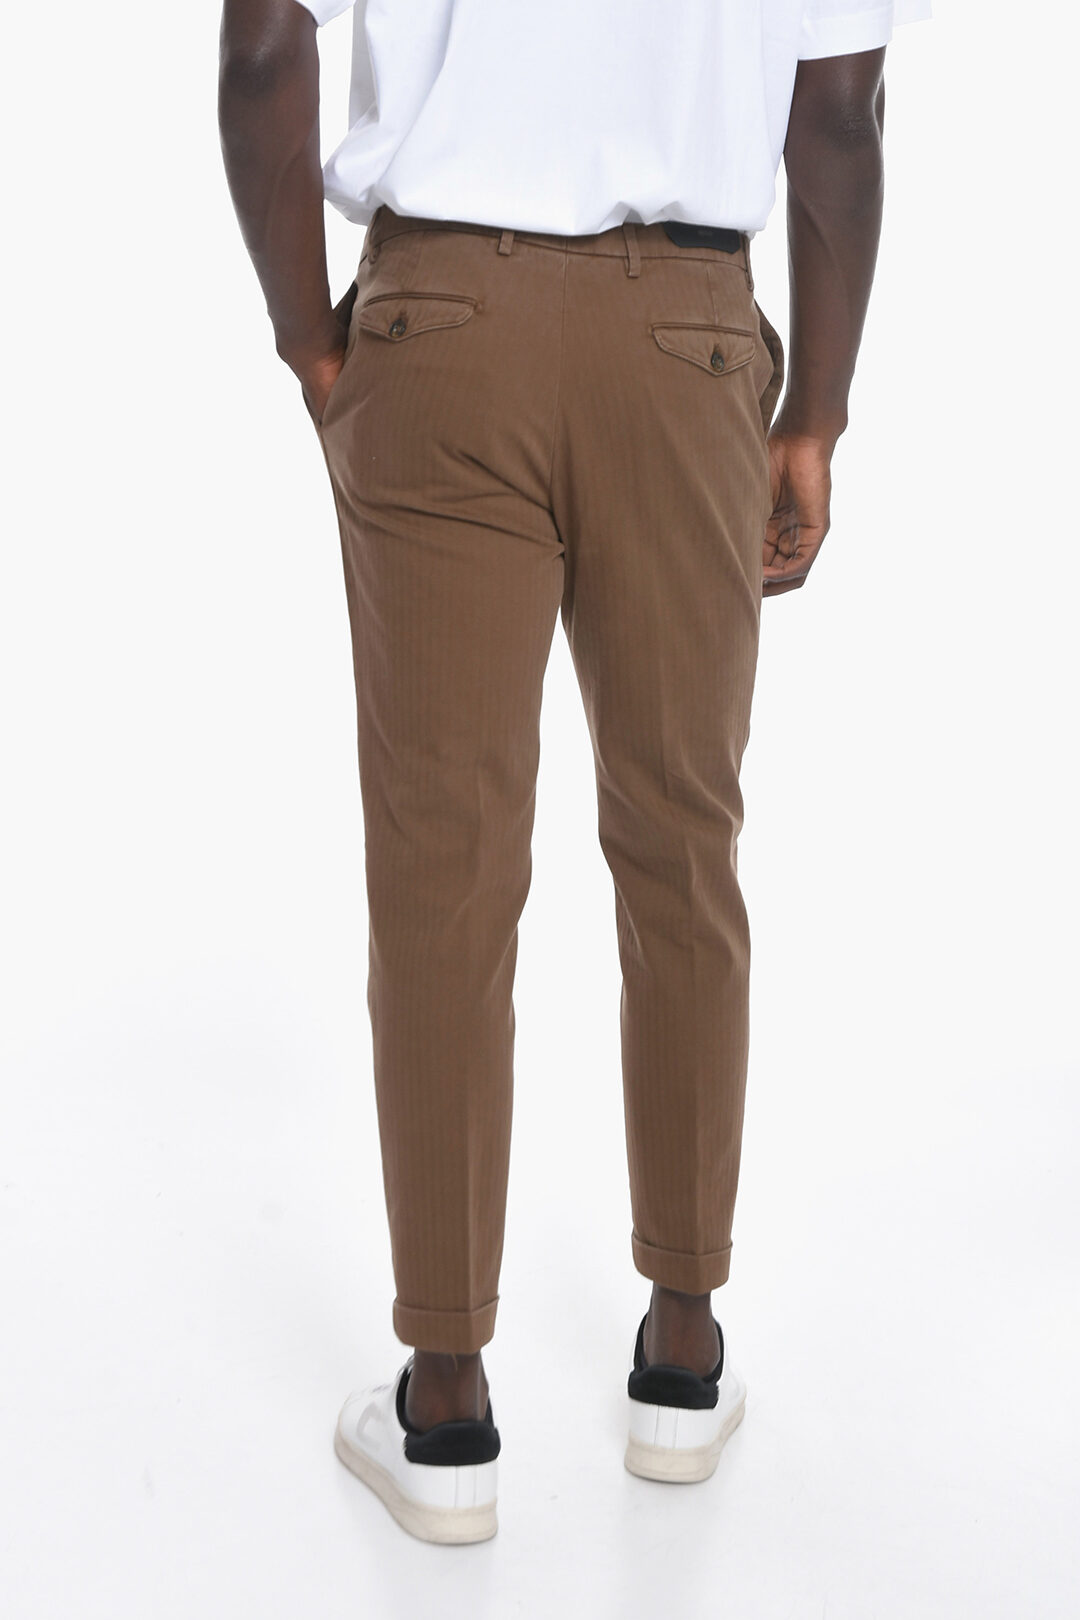 Alvivi Men Low Waist Faux Leather Shiny Pants Club Stage Show Tight Trousers  S-2XL - Walmart.com